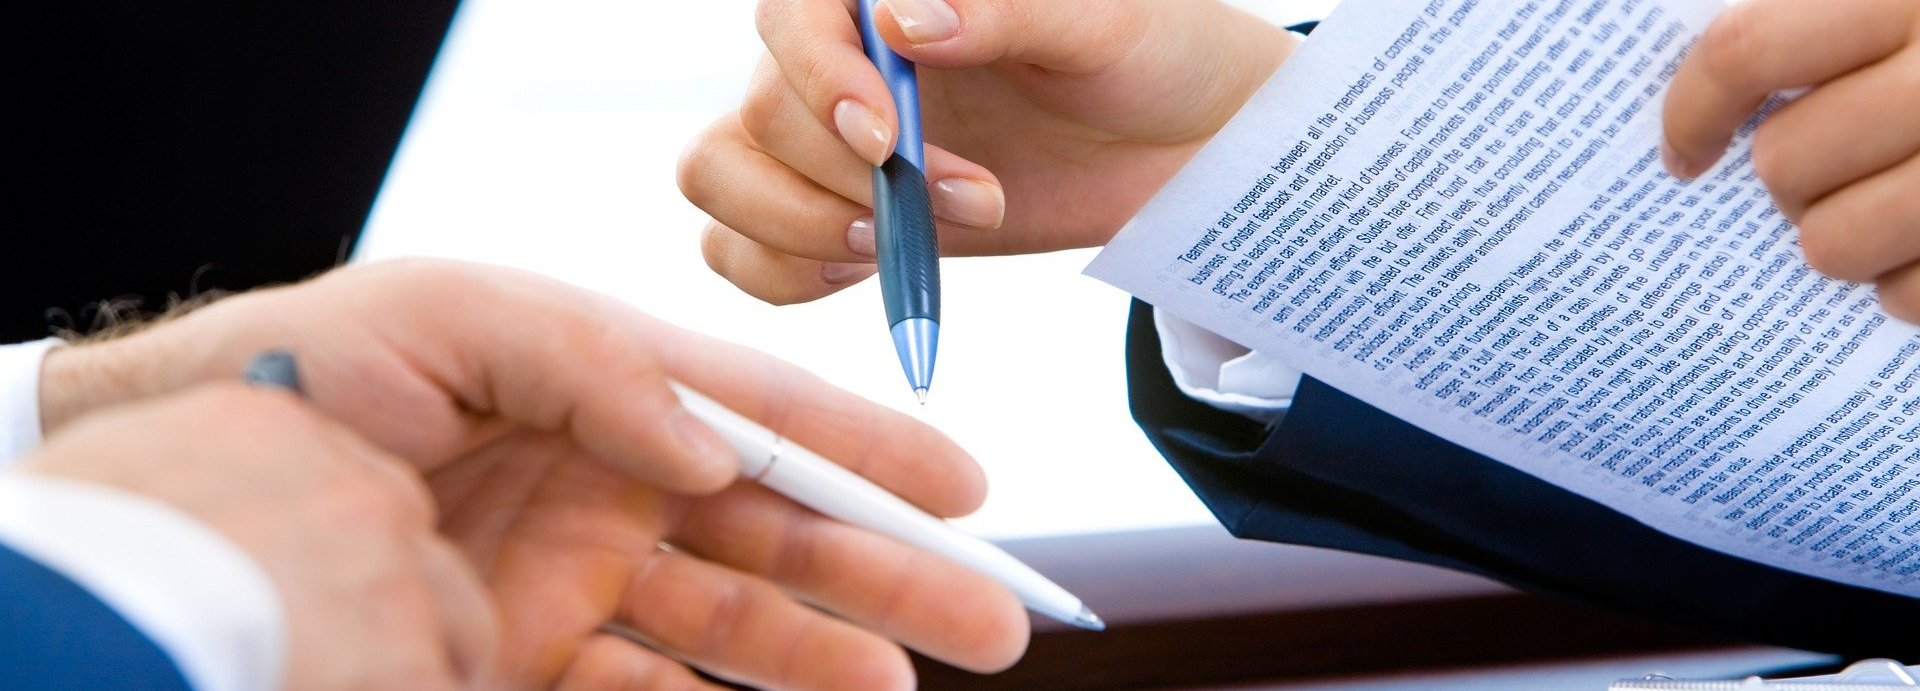 Hände zweier Personen die einen Vertrag unterzeichnen mit Stift und Papier